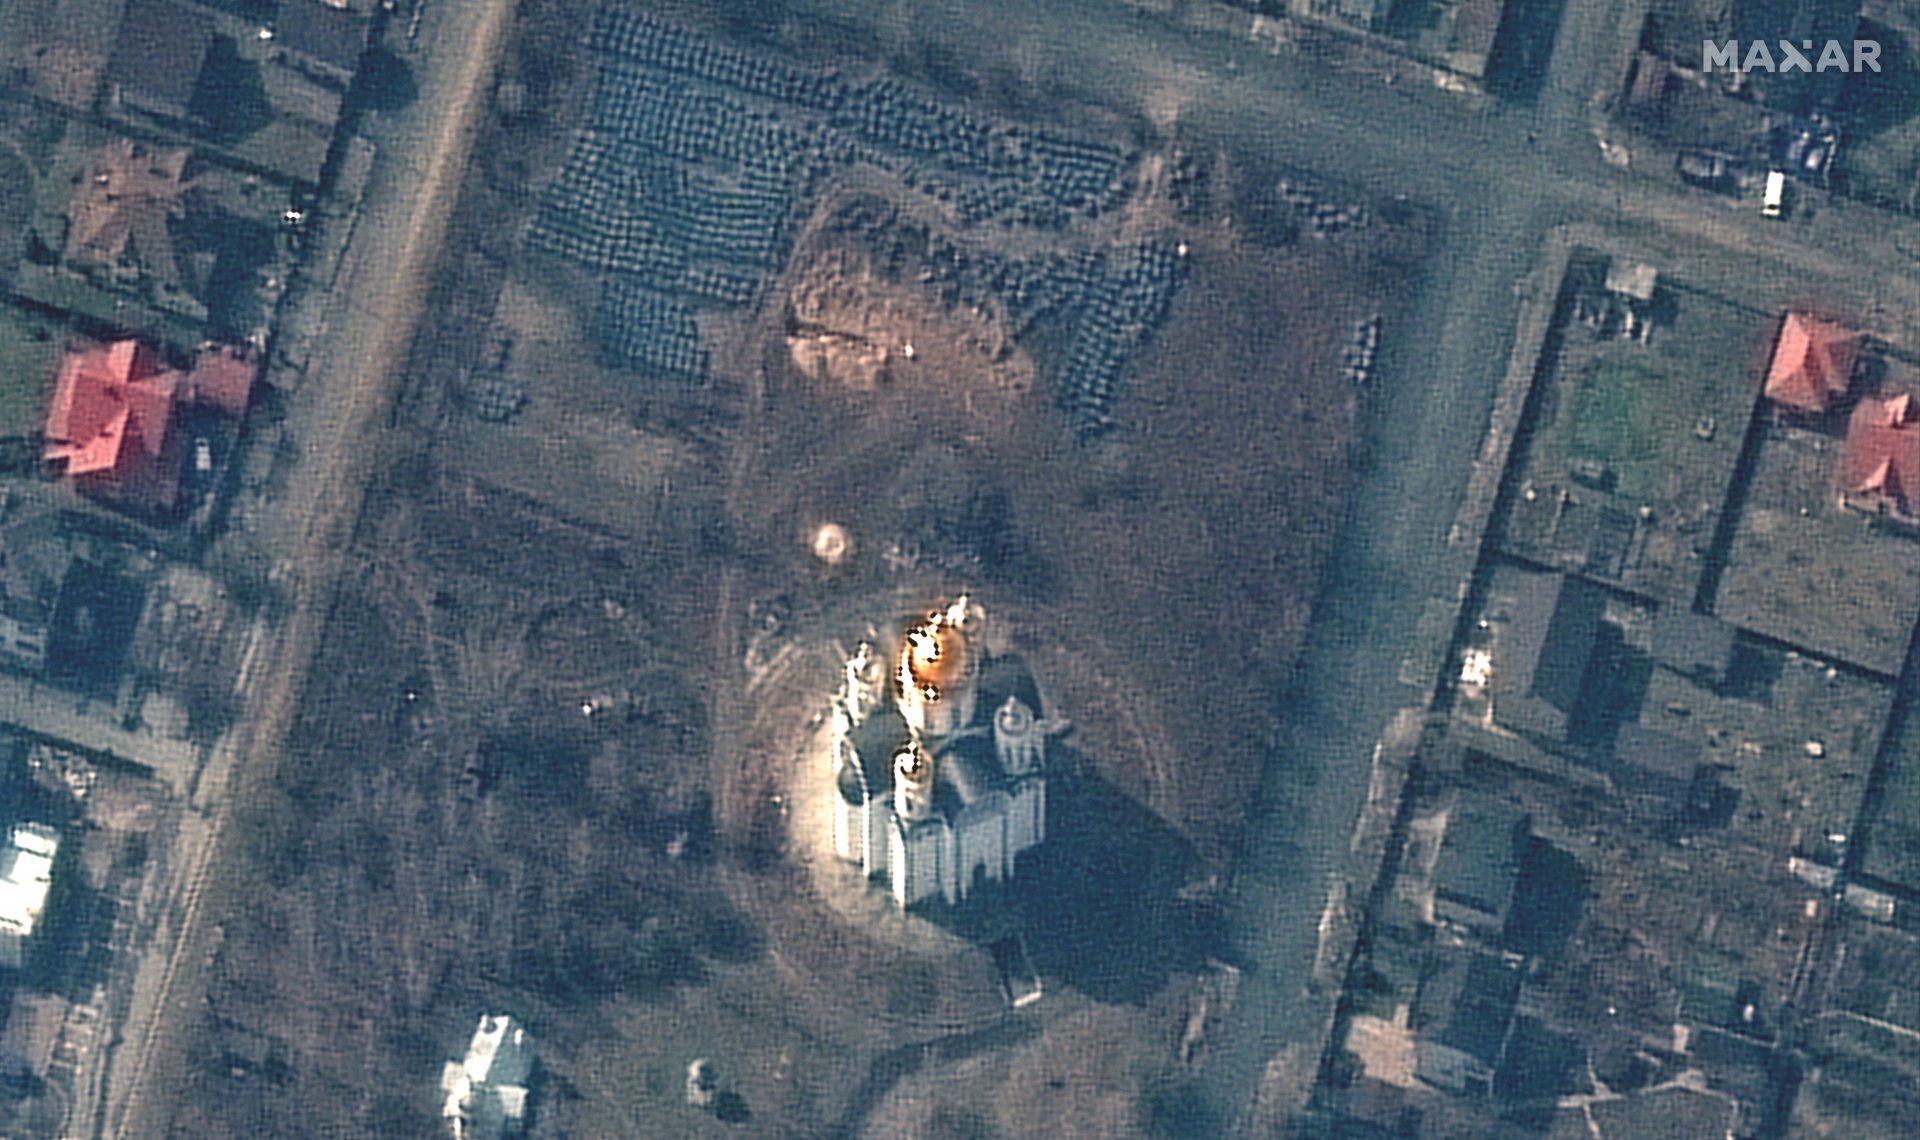 Сателитно изображение, показващо Буча, Украйна, с църквата Св. Андрей в центъра и мястото на вероятния масов гроб